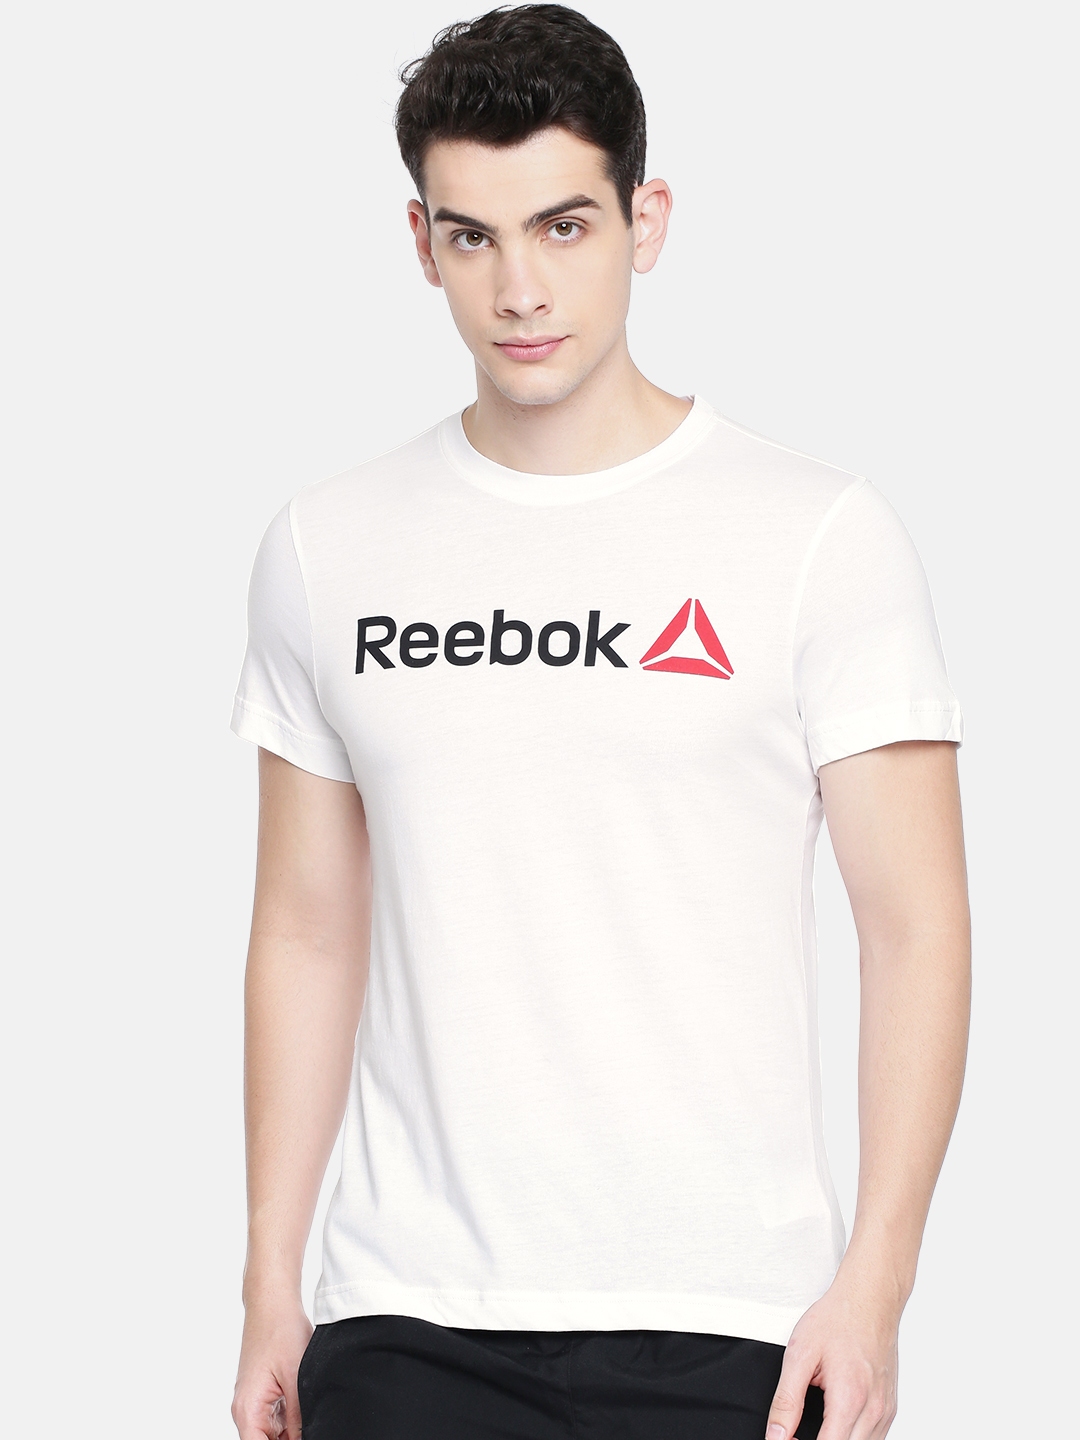 reebok white t shirt